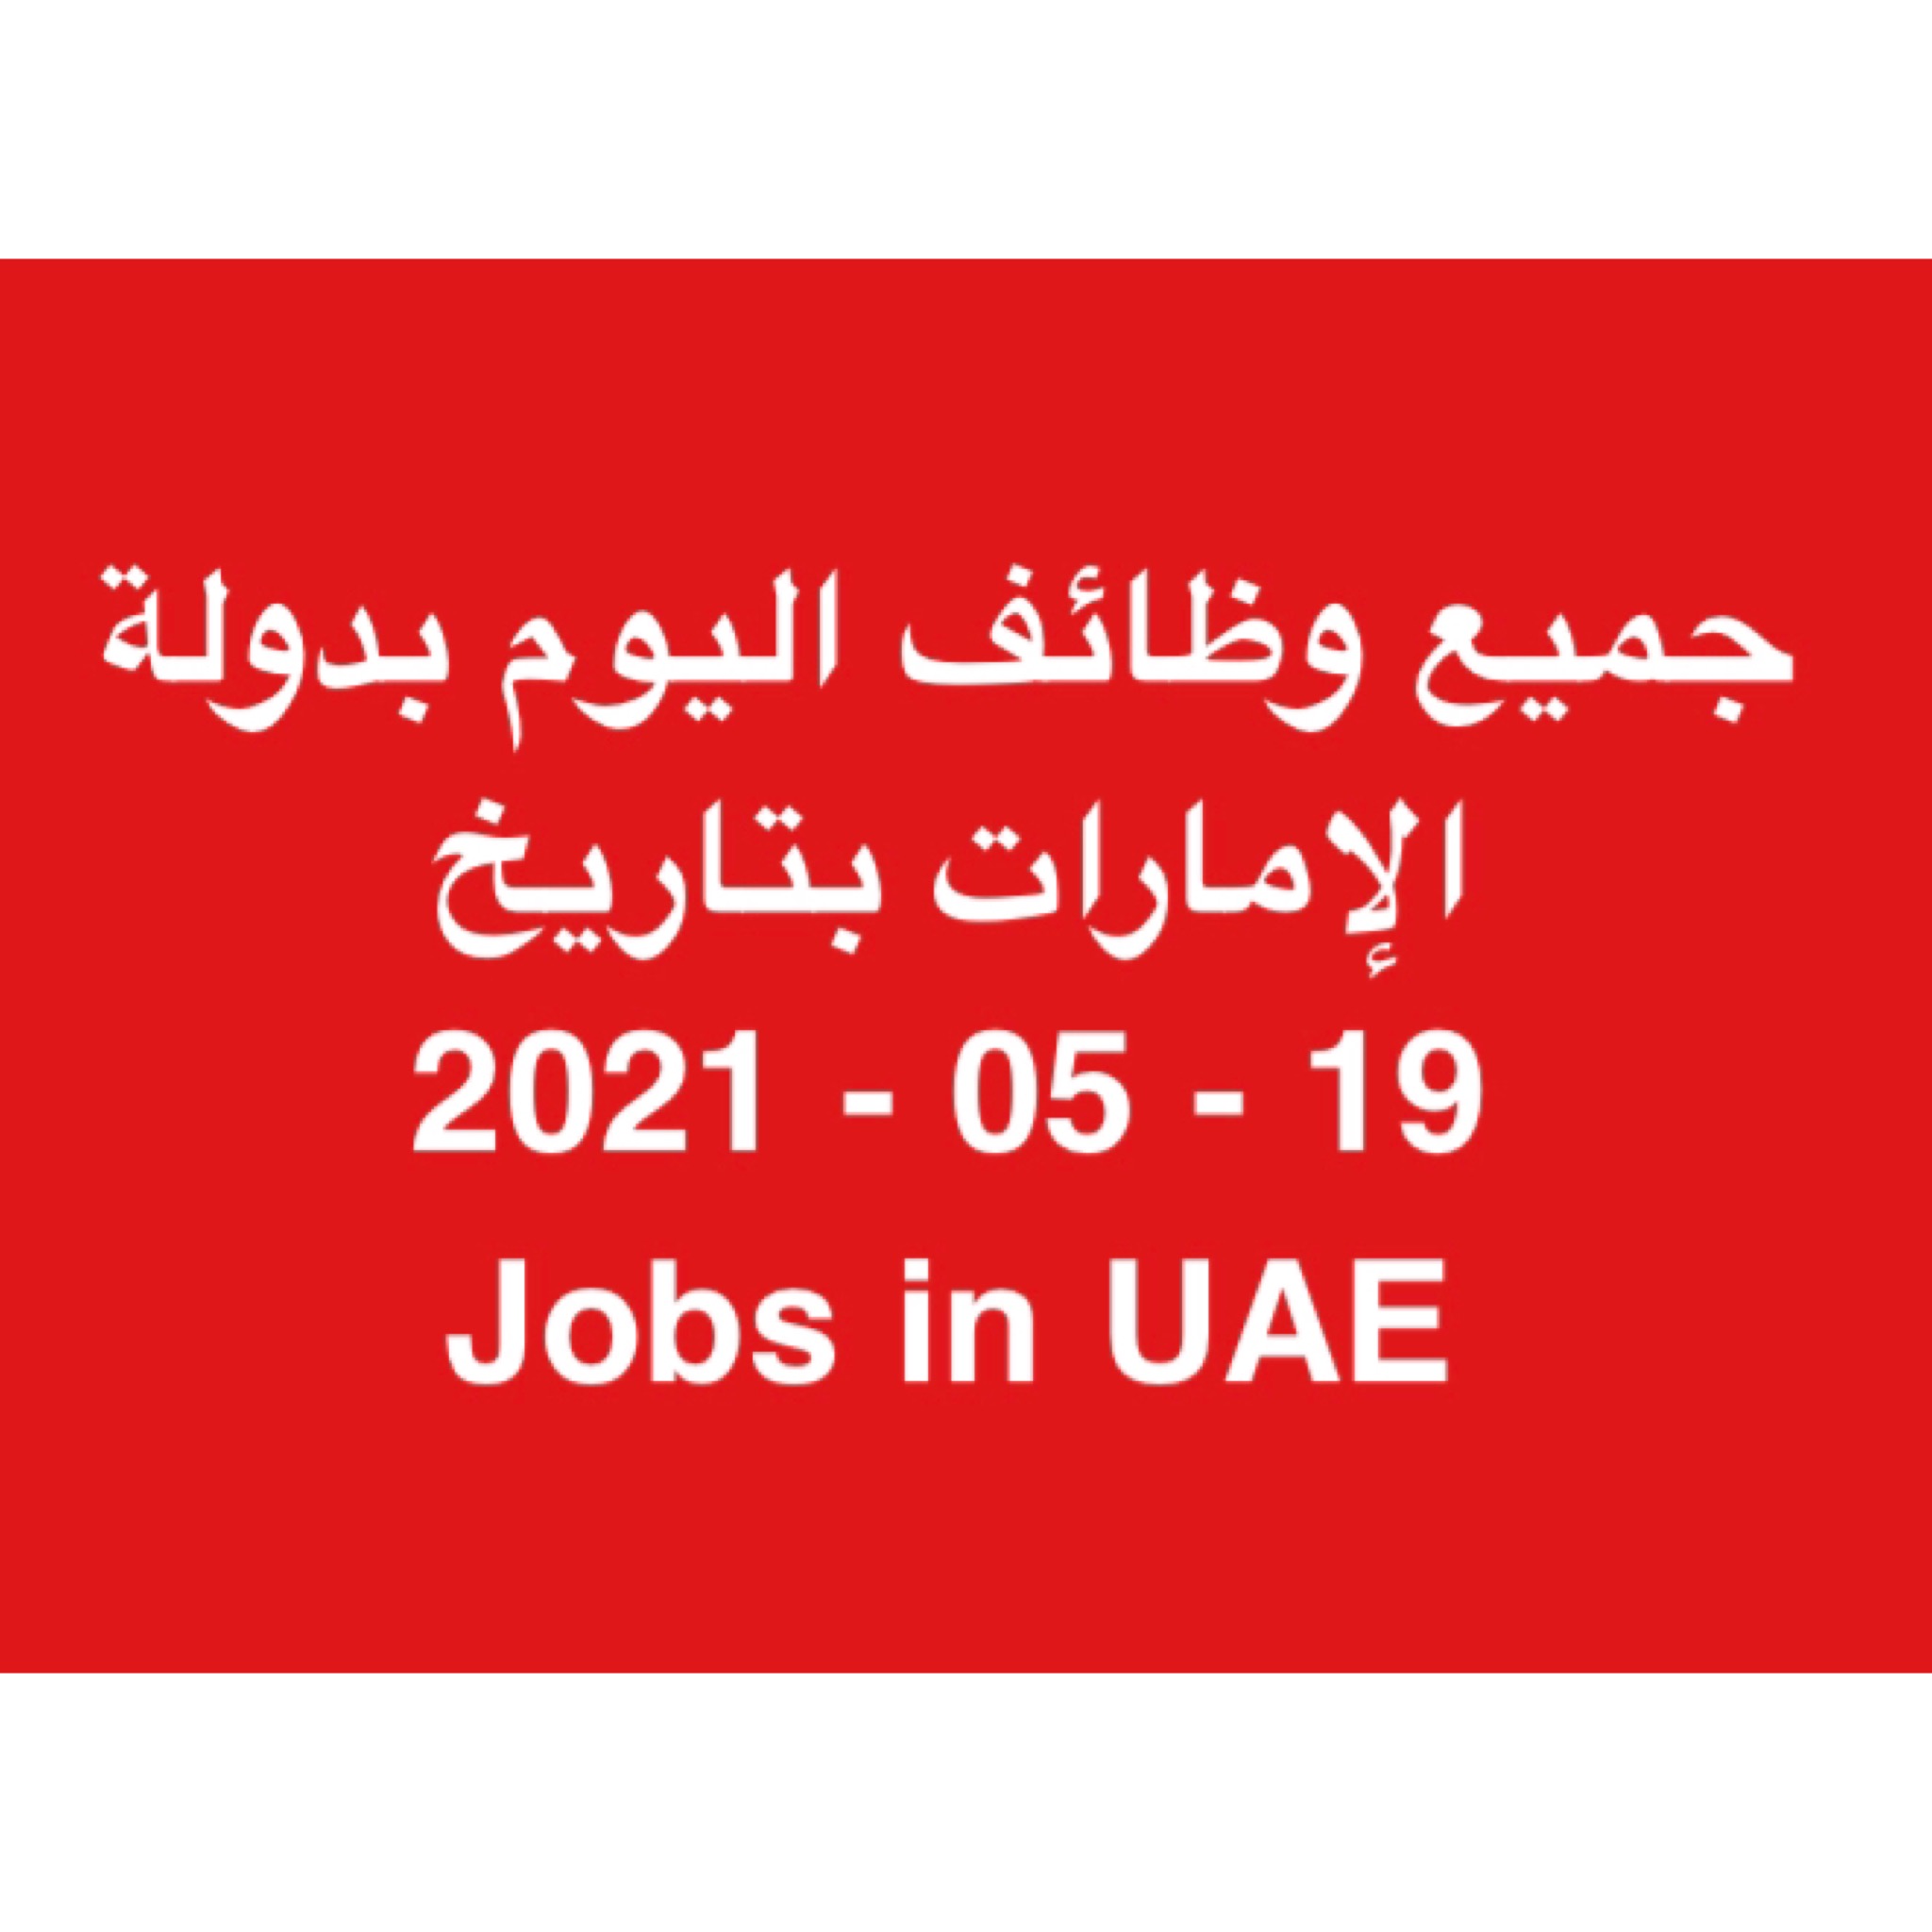 جميع وظائف اليوم بدولة الإمارات بتاريخ 19 - 05 - 2021 | Jobs in UAE